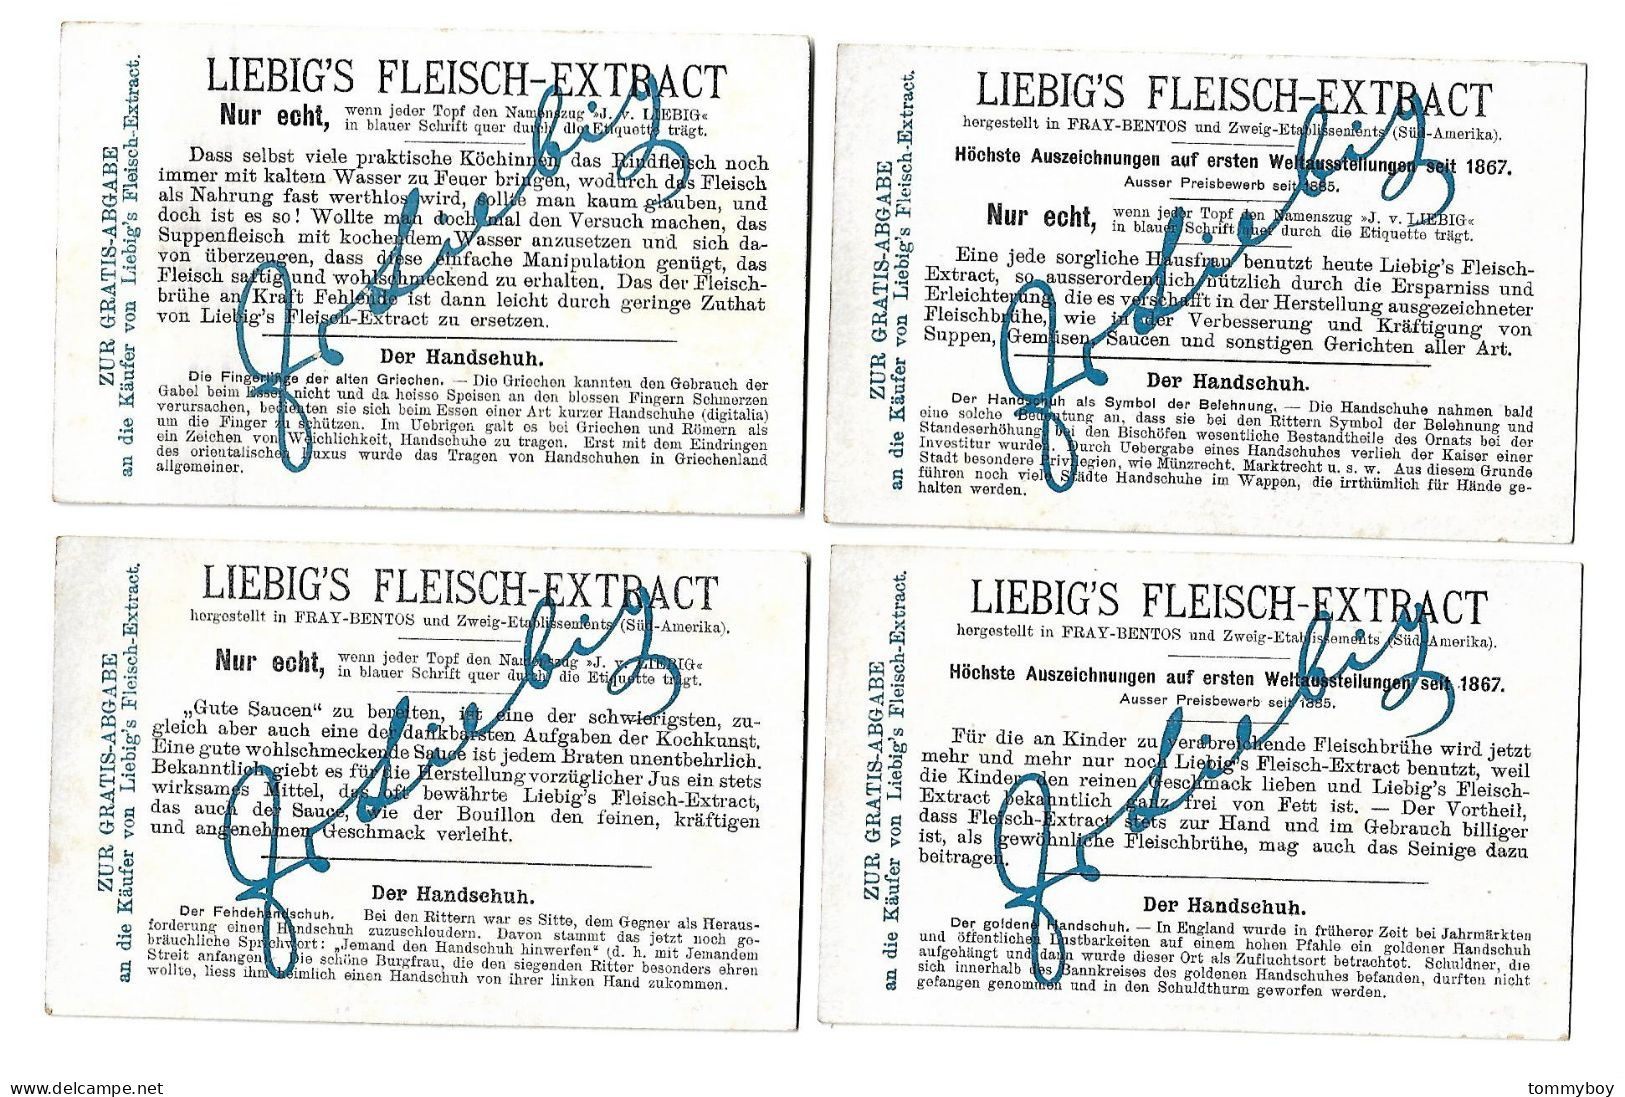 S 782, Liebig 6 Cards, Der Handschuh (German) (ref B21) - Liebig